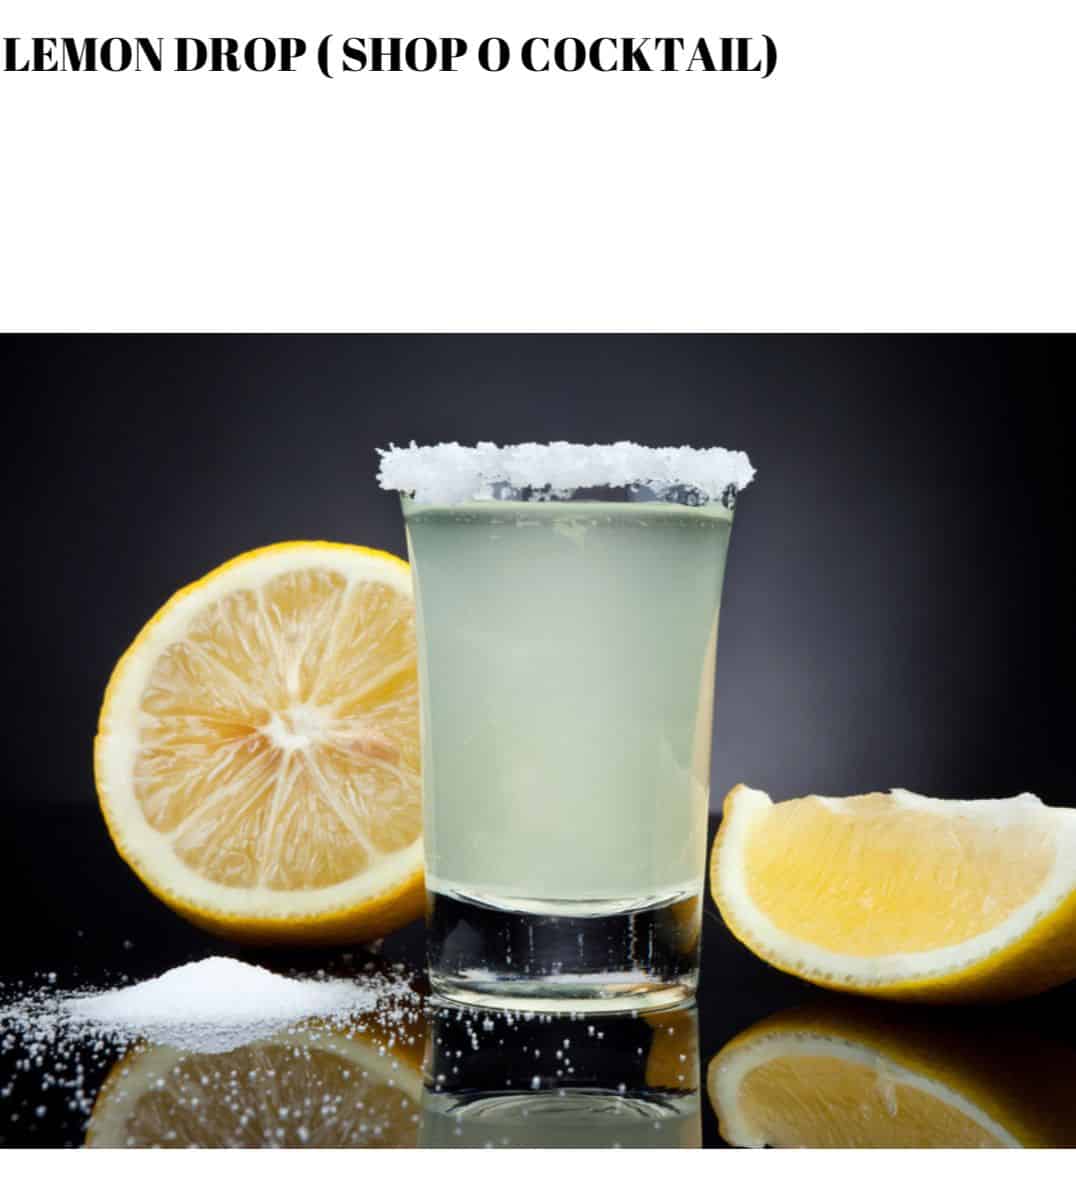 Lemon drop shop o cocktail.